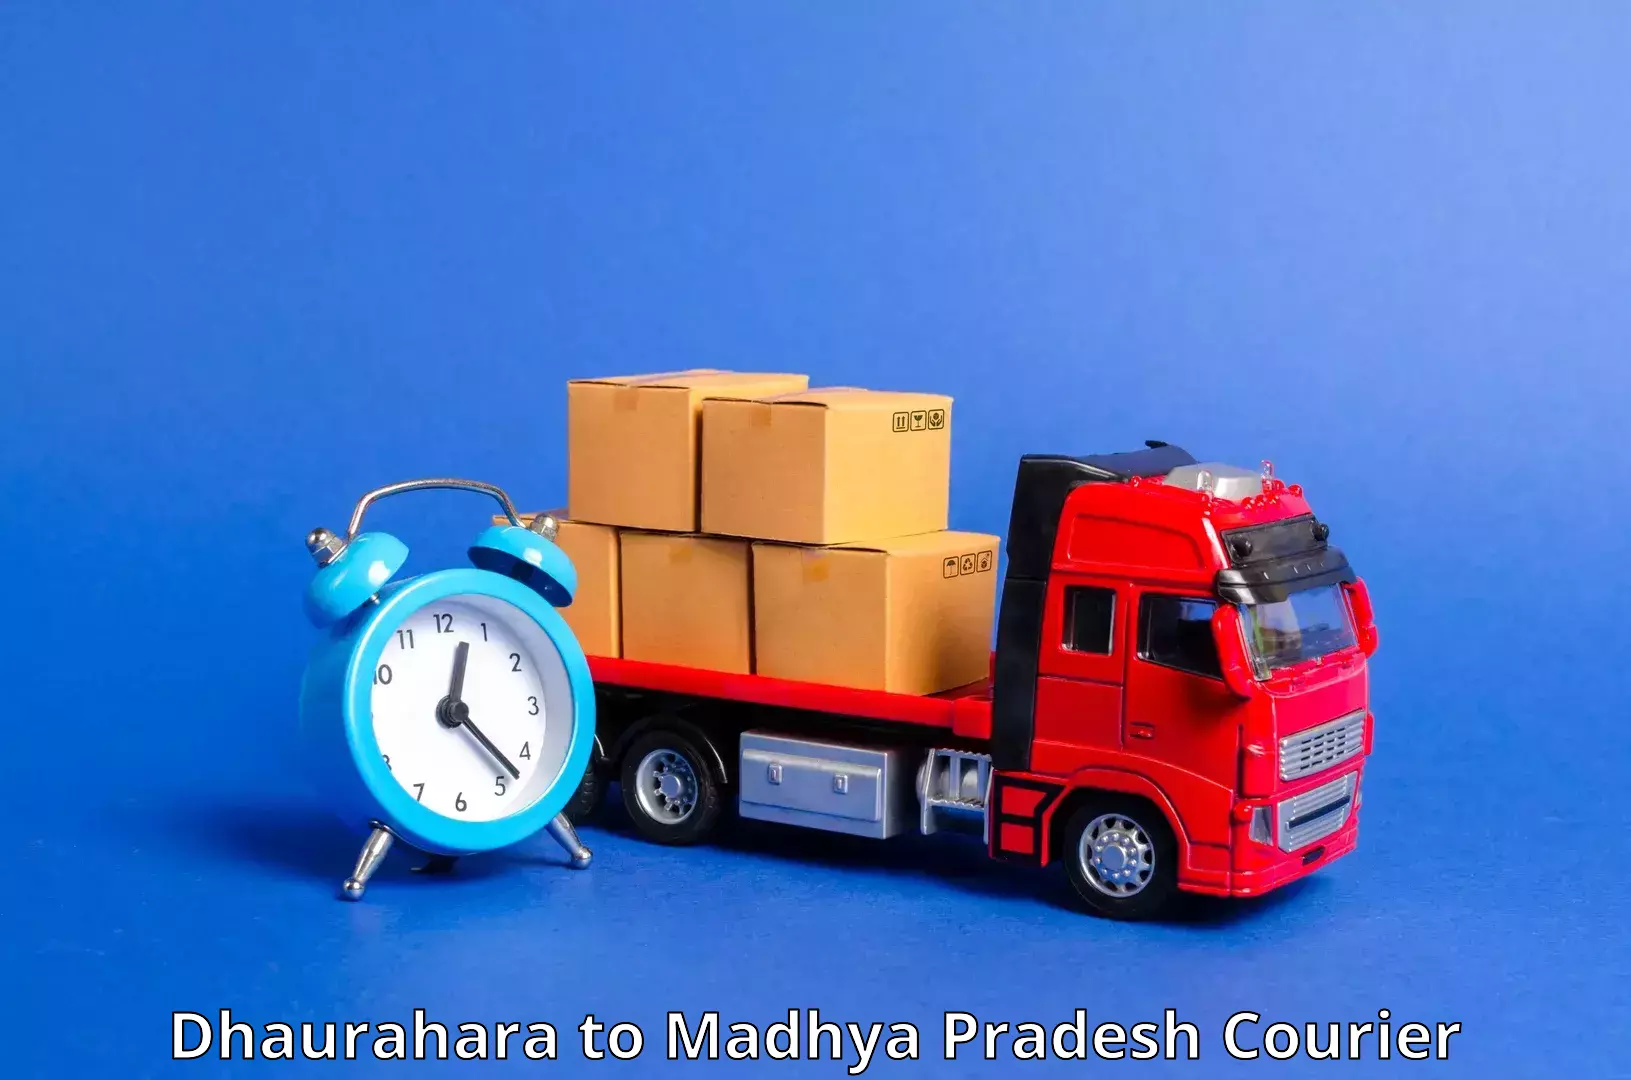 Efficient cargo services Dhaurahara to Chanderi